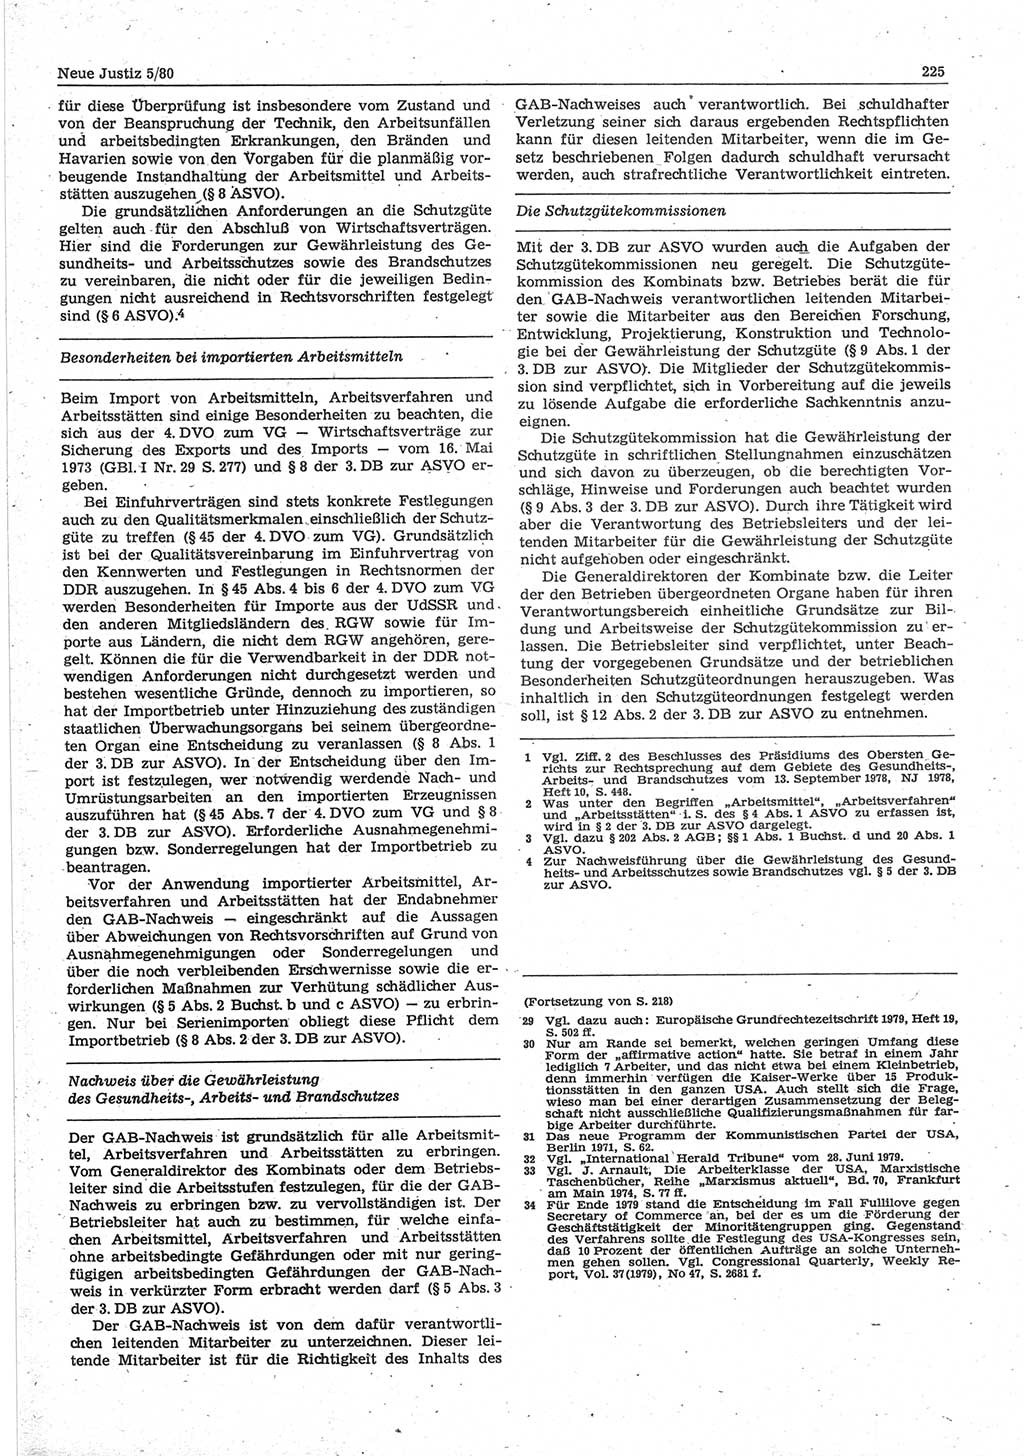 Neue Justiz (NJ), Zeitschrift für sozialistisches Recht und Gesetzlichkeit [Deutsche Demokratische Republik (DDR)], 34. Jahrgang 1980, Seite 225 (NJ DDR 1980, S. 225)